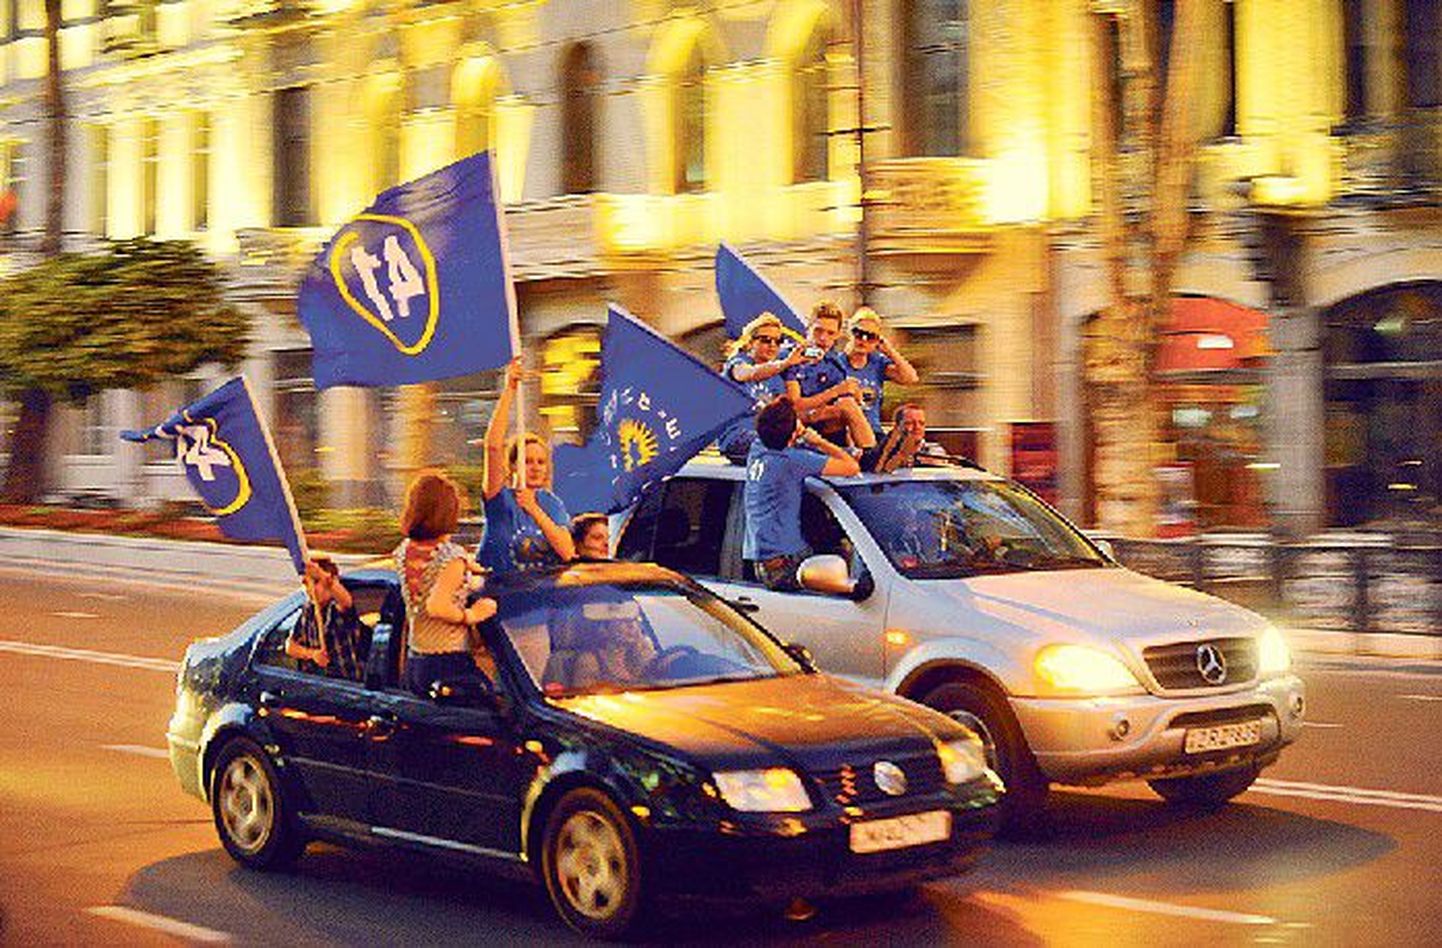 В день перед выборами в столице Грузии царила спокойная обстановка, но вечером по улицам Тбилиси прокатились колонны сигналящих автомобилей. Больше всего внимания привлекали сторонники правящей партии «Единое национальное движение» и оппозиционной «Грузинской мечты».